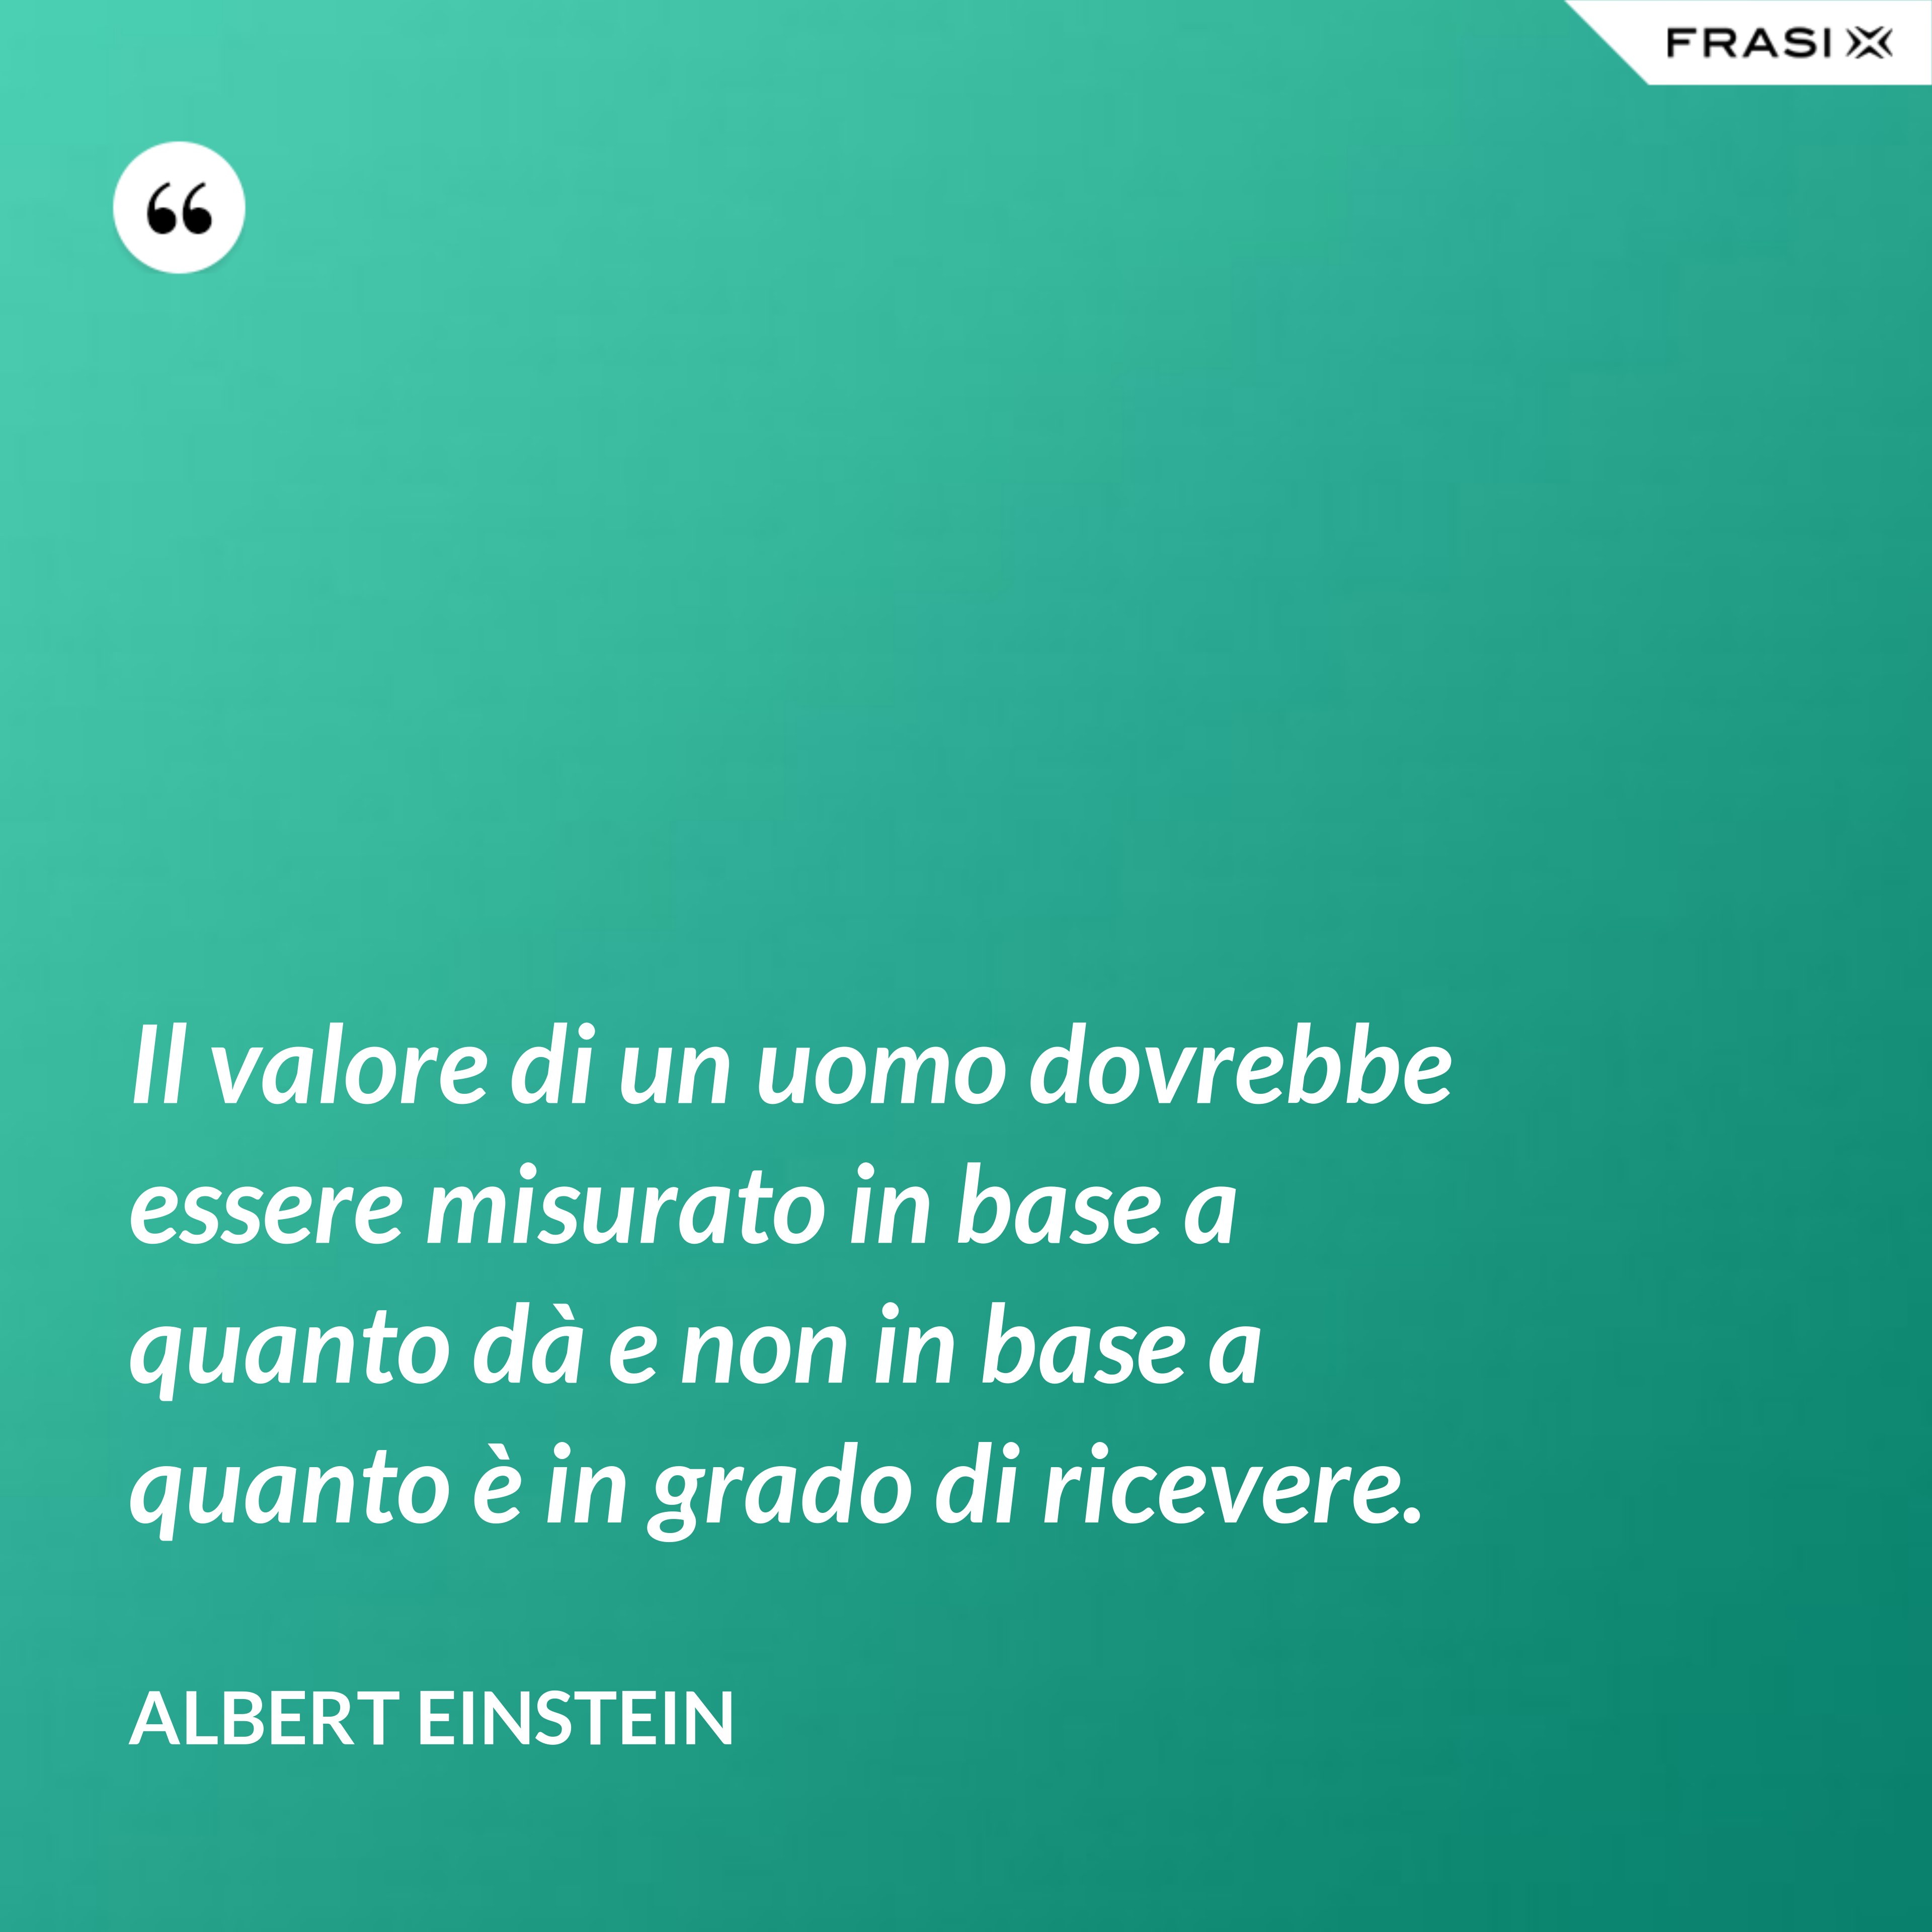 Il valore di un uomo dovrebbe essere misurato in base a quanto dà e non in base a quanto è in grado di ricevere. - Albert Einstein